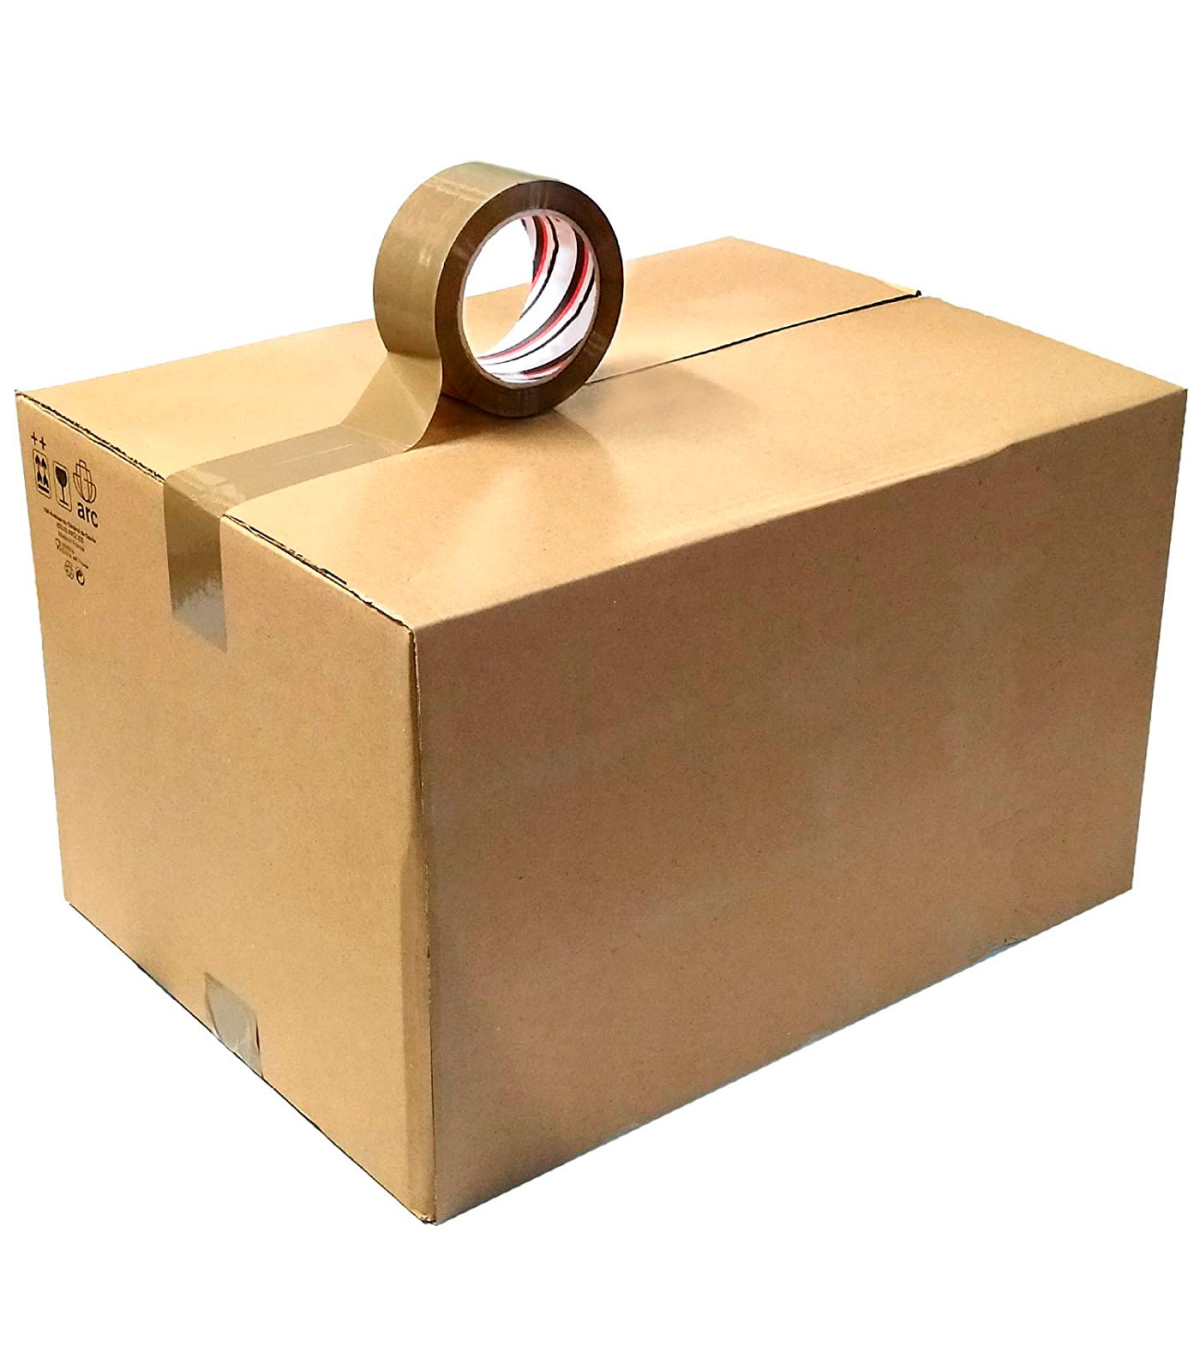 Tradineur - Cinta embalaje adhesiva, precinto multiusos para embalar,  sellar, empaquetar, cerrar cajas, resistente al desgarro